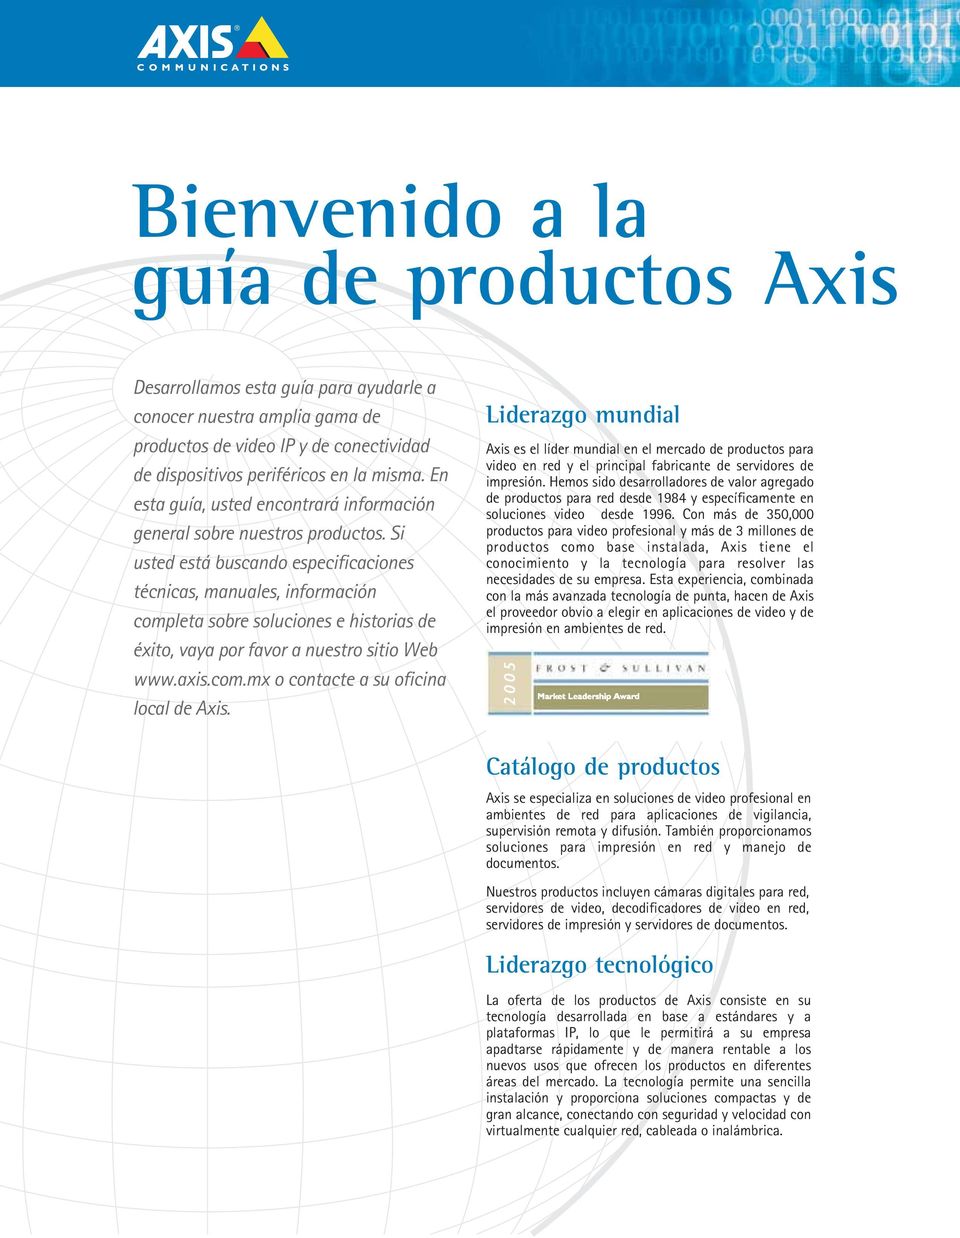 Si usted está buscando especificaciones técnicas, manuales, información completa sobre soluciones e historias de éxito, vaya por favor a nuestro sitio Web www.axis.com.mx o contacte a su oficina local de Axis.